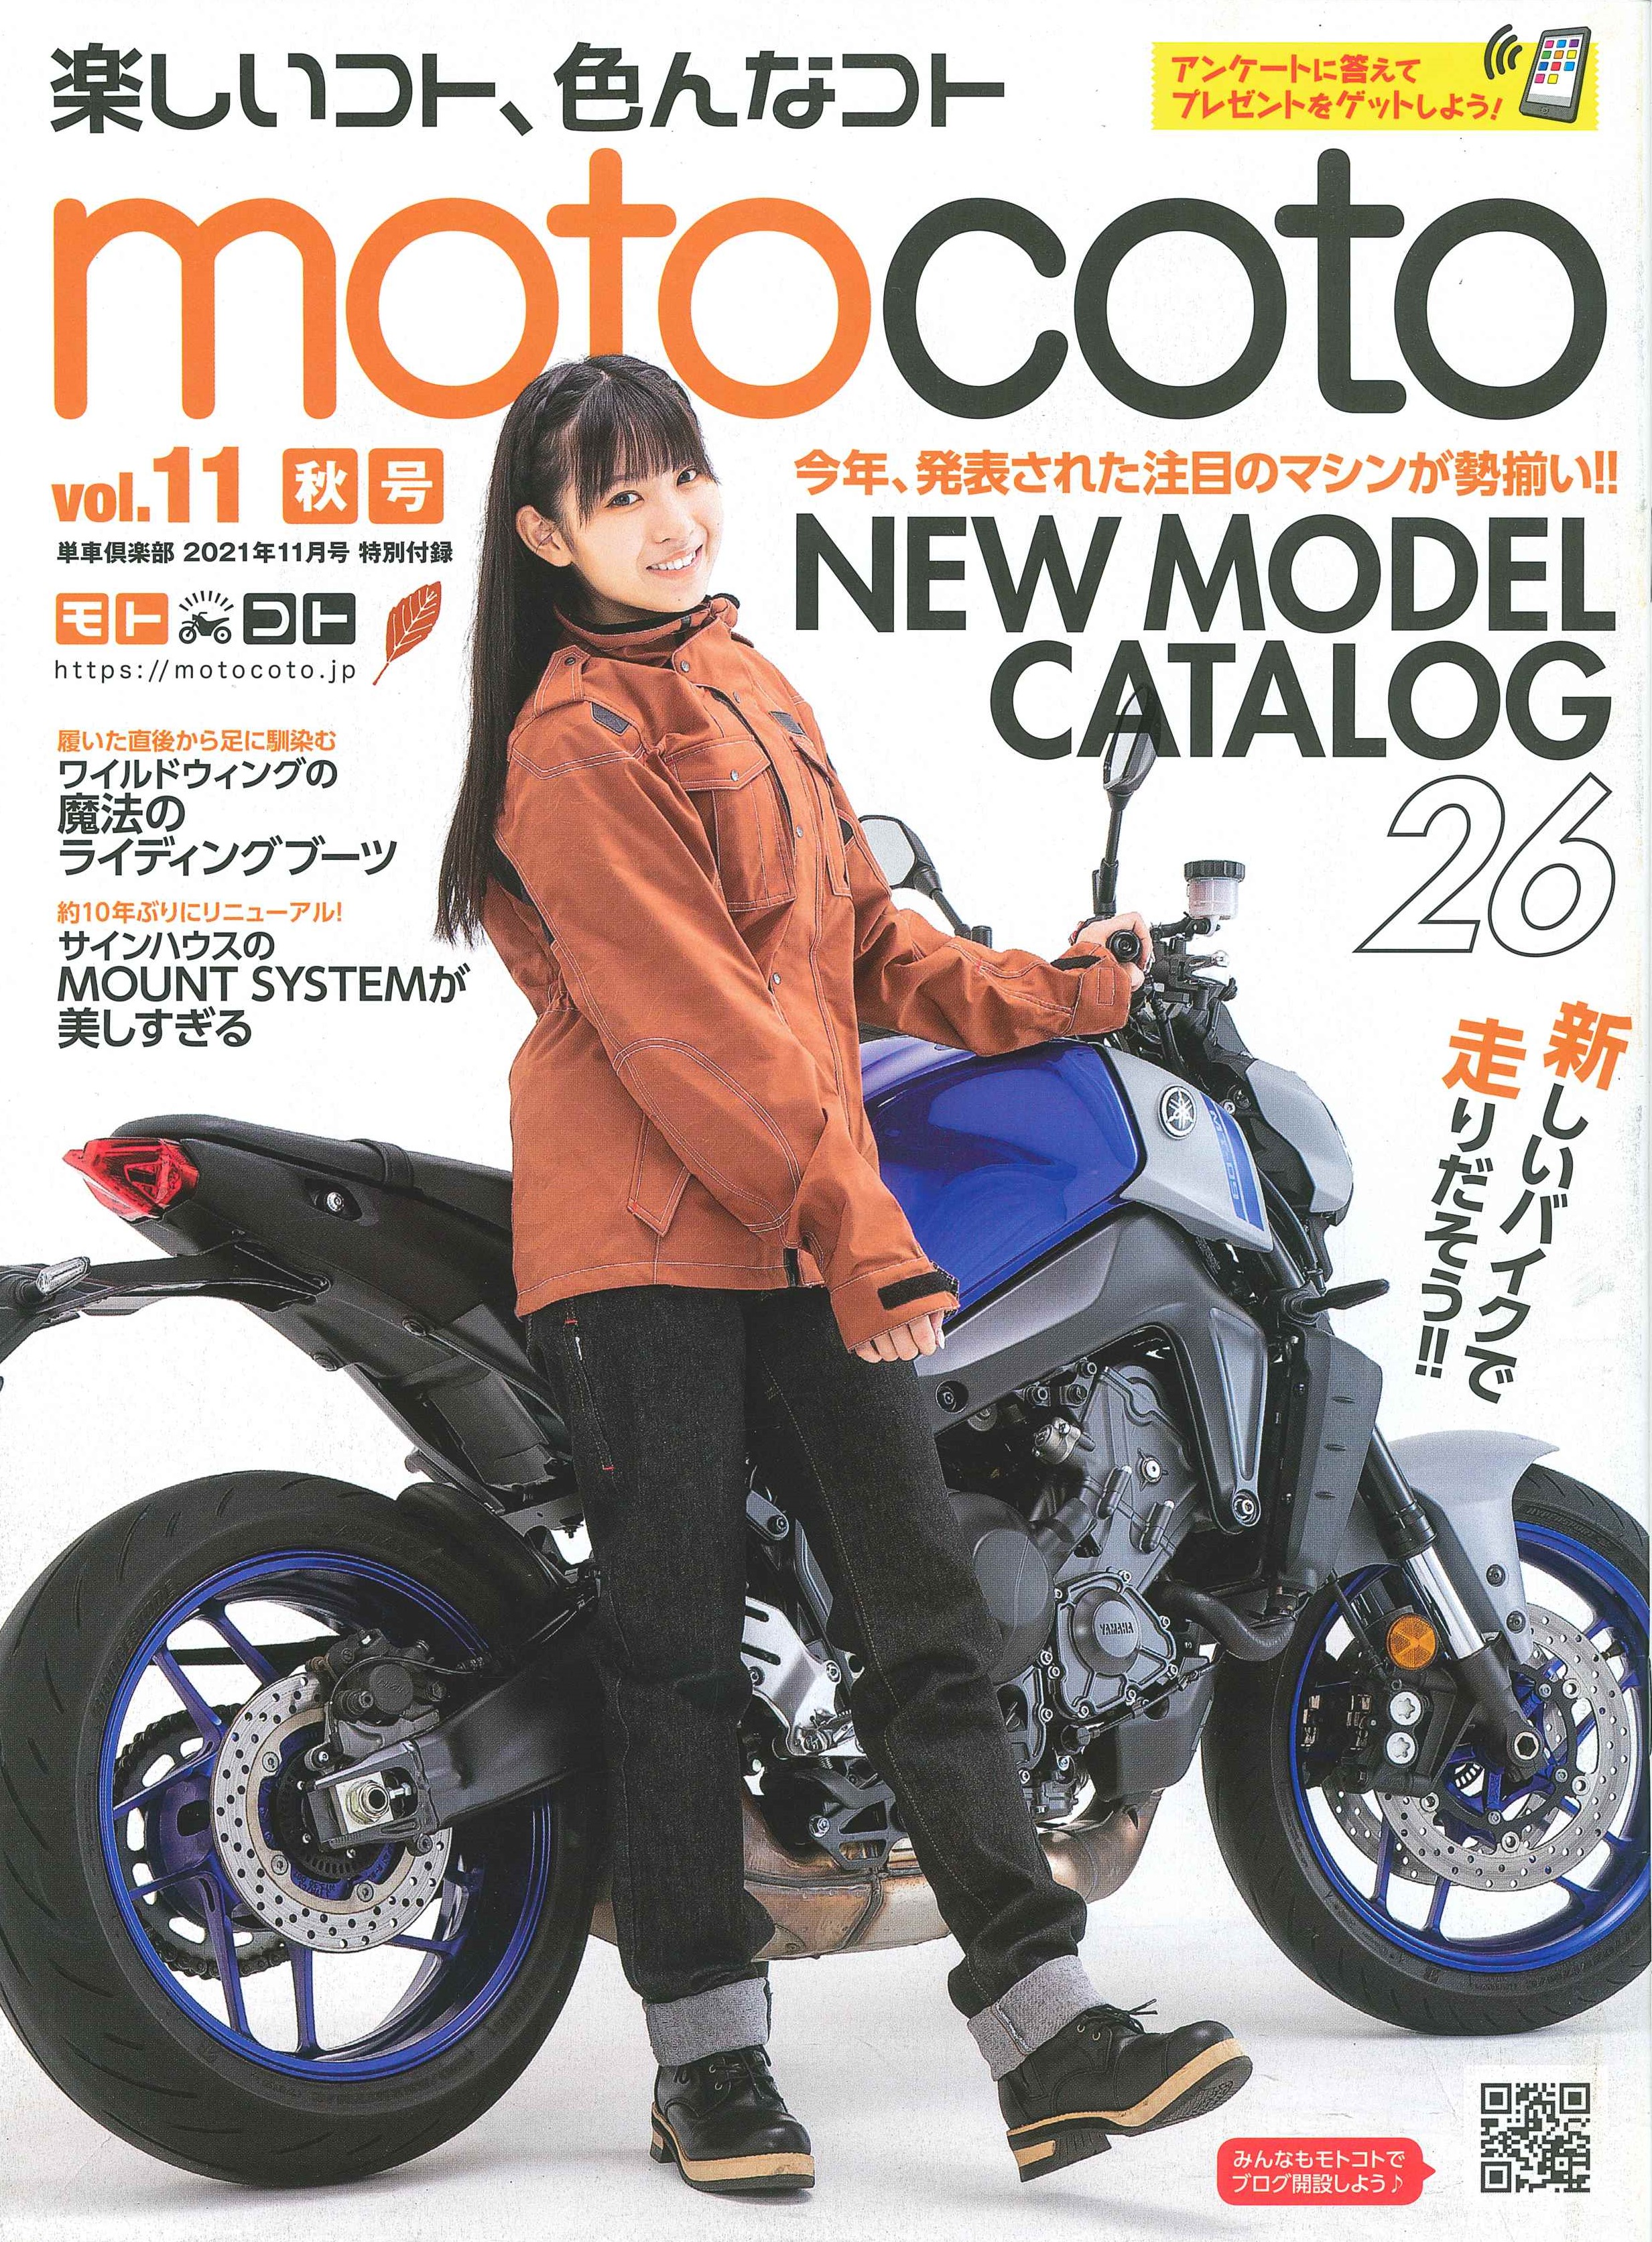 【motocoto vol.11掲載】バイク用スマホホルダー「MOUNT SYSTEM」